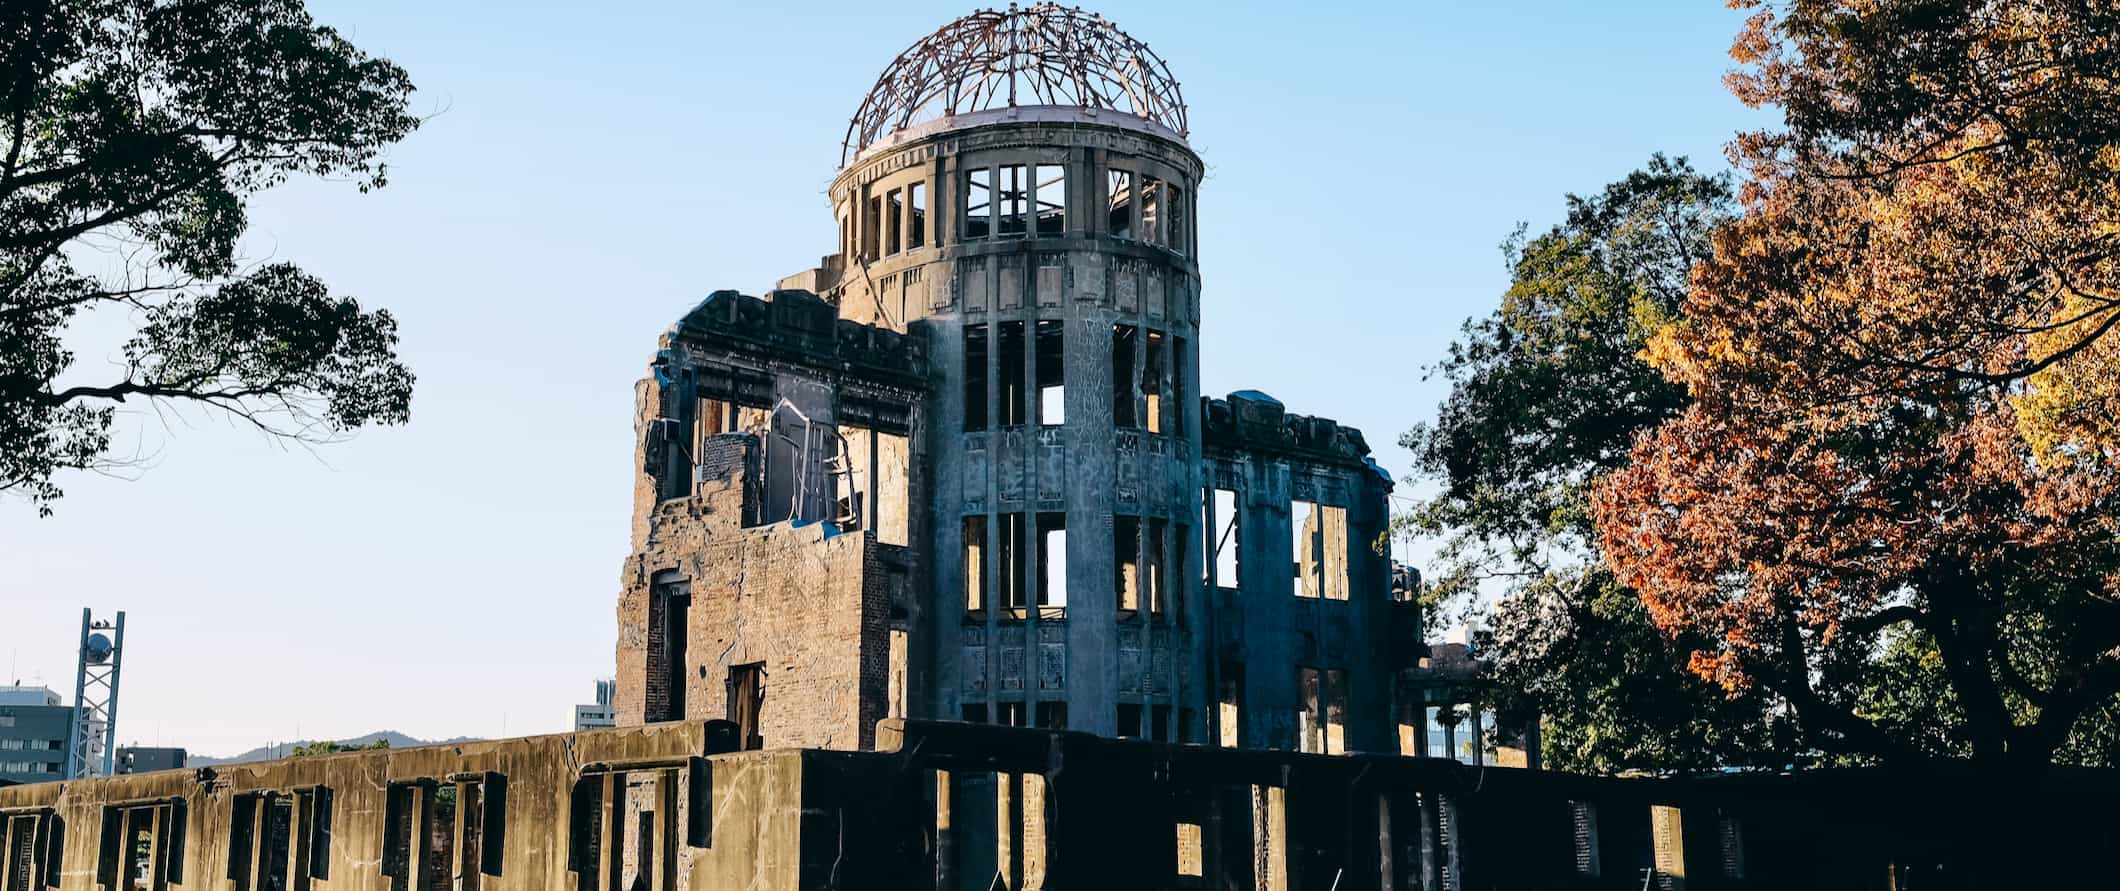 Ruínas da bomba atômica lançada sobre Hiroshima durante a Segunda Guerra Mundial.